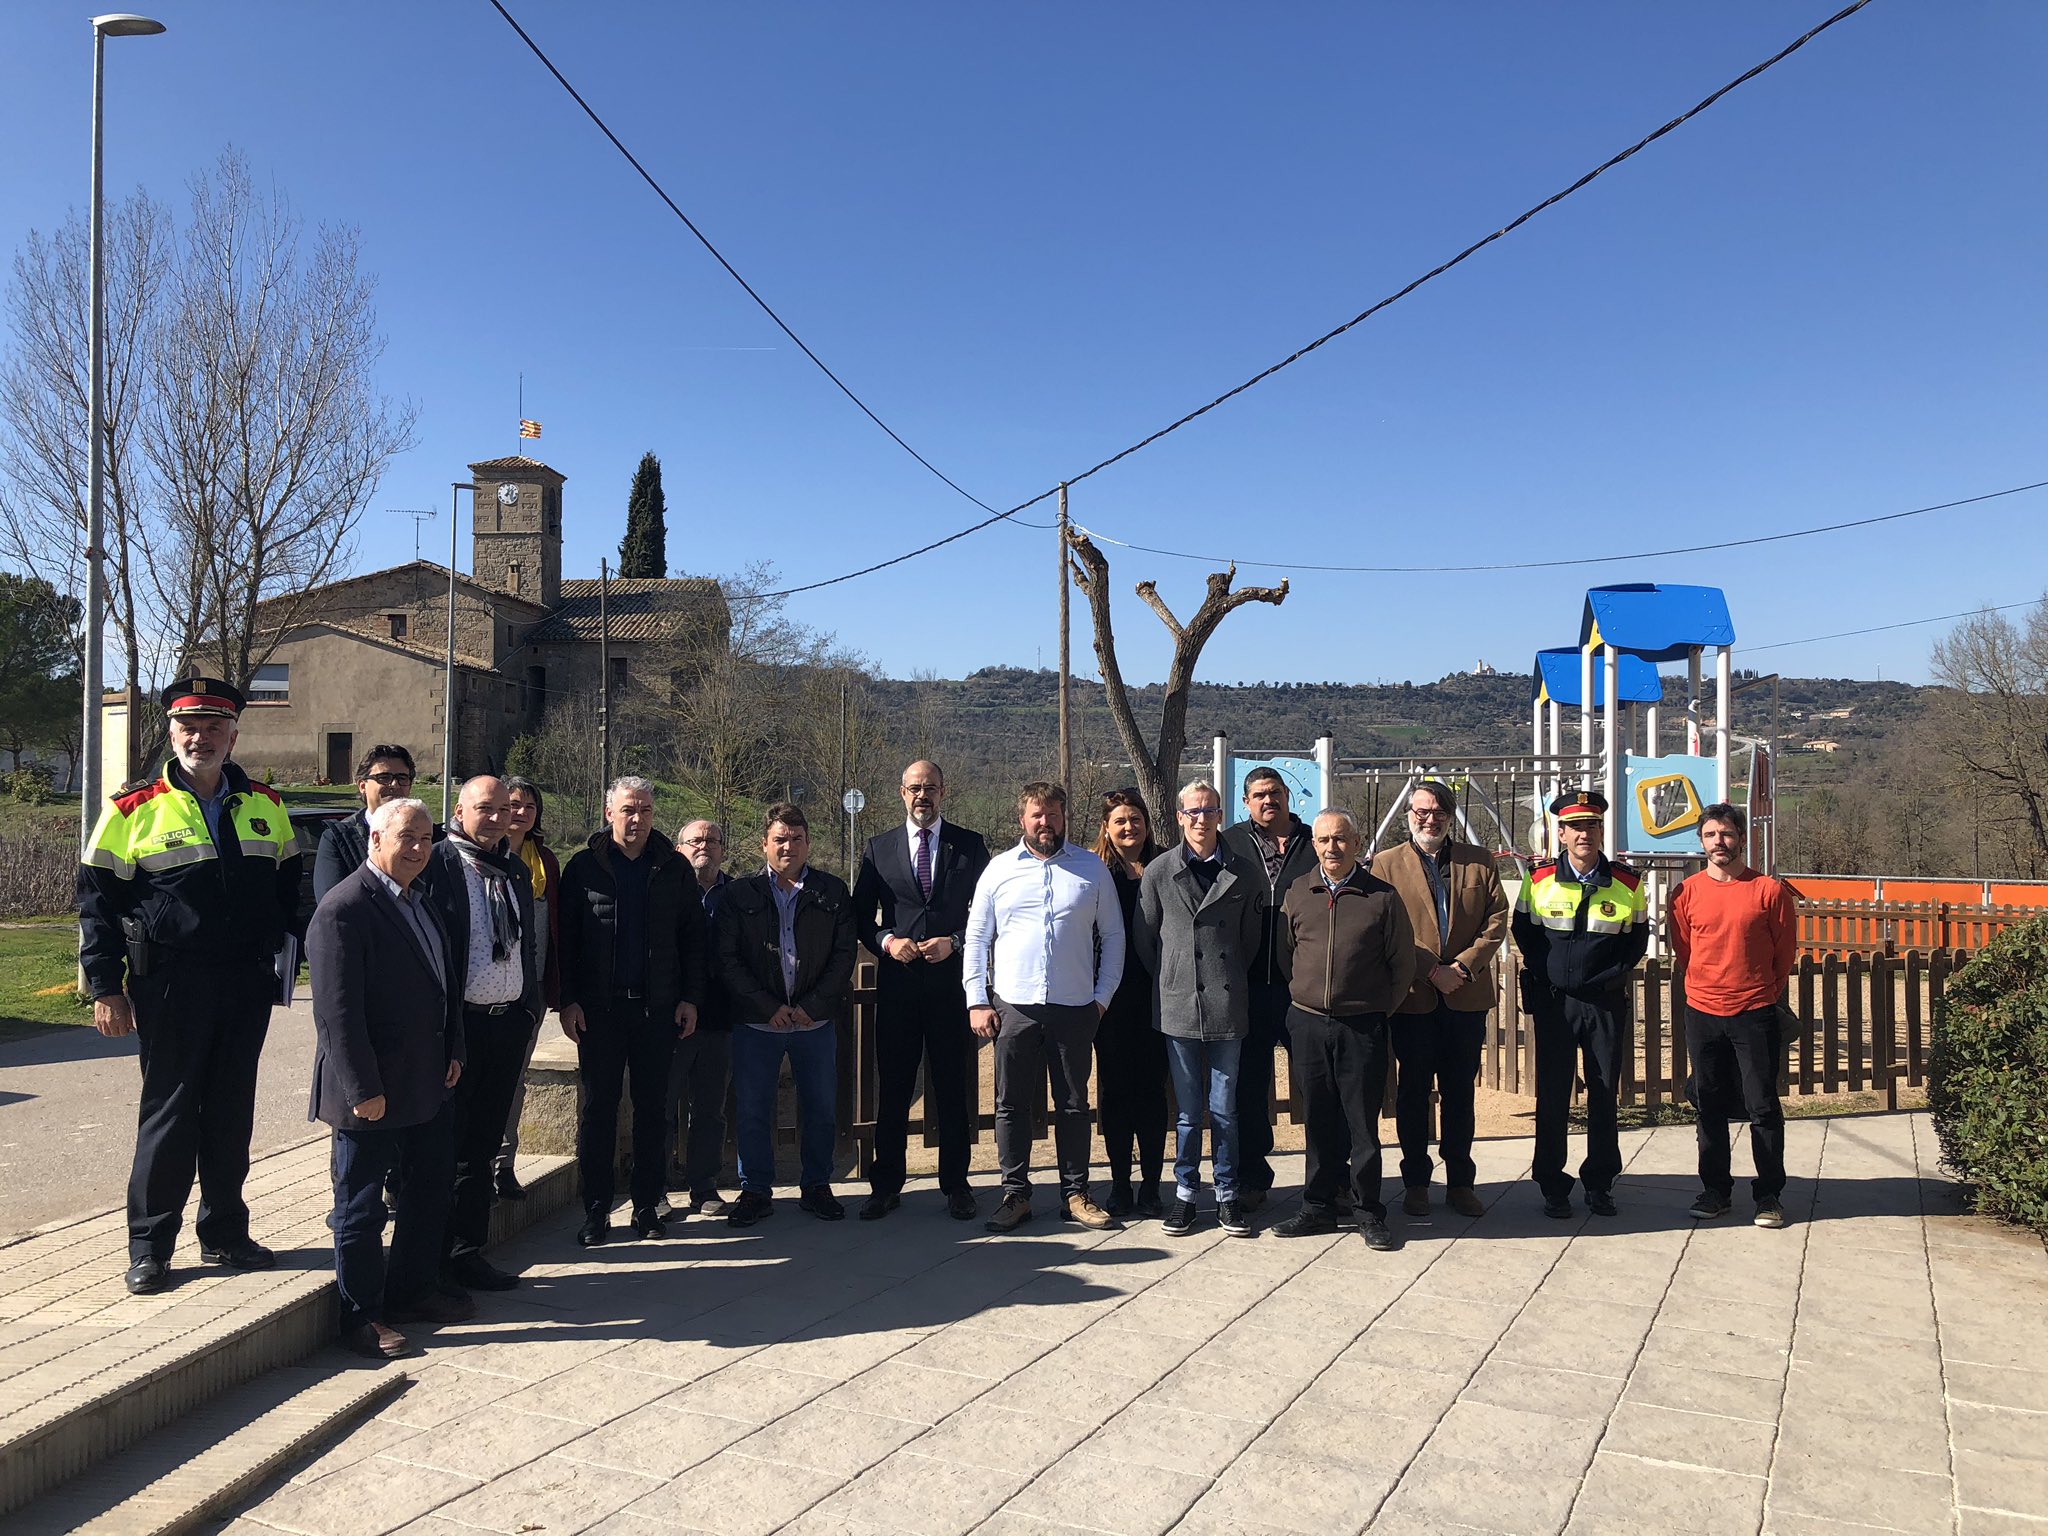 Una imatge de la visita del conseller Buch als alcaldes del Lluçanès